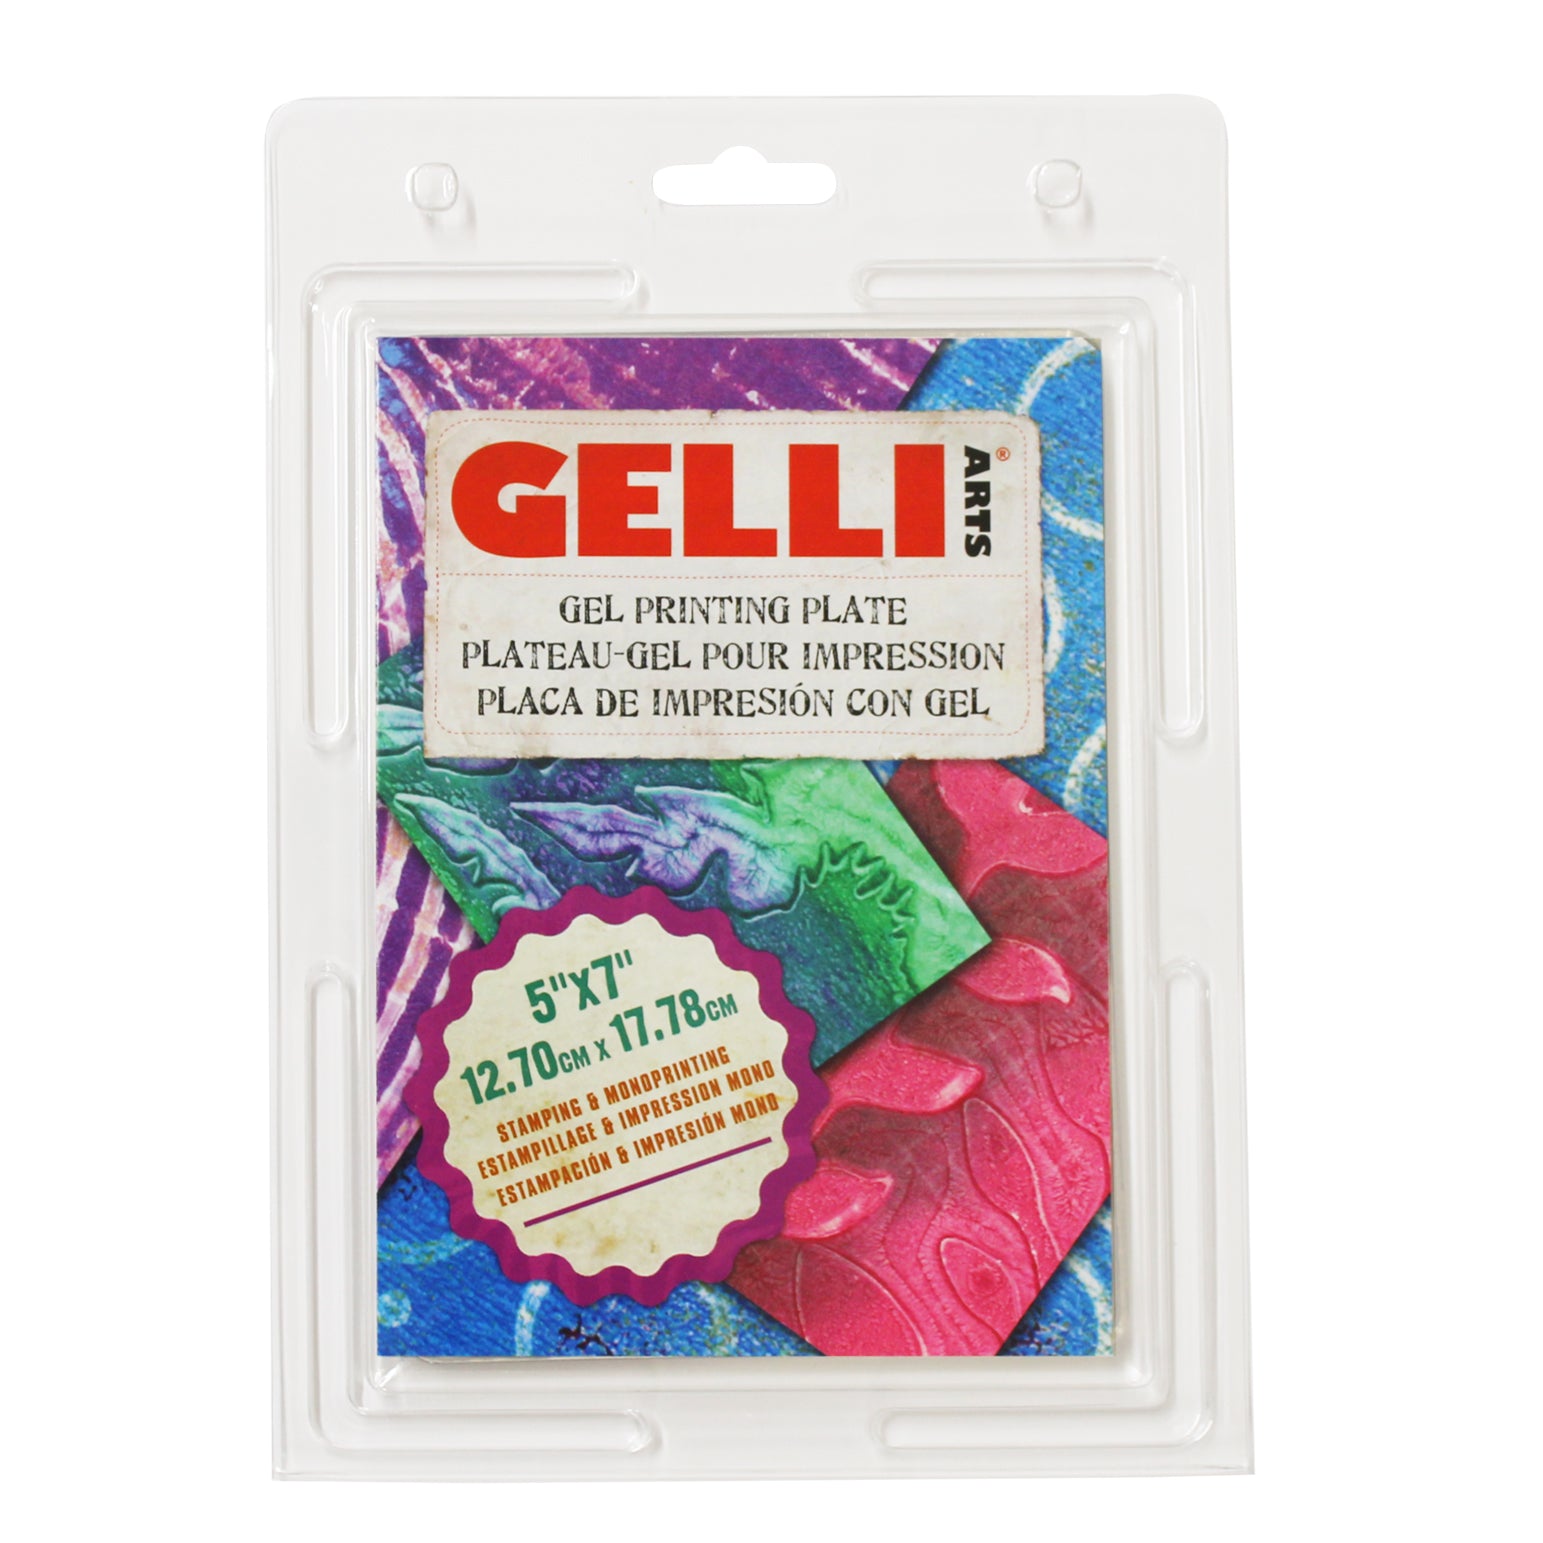  Gelli Arts Stamp Kit with Gel Plate Kit Stamping and Printing  Kit, DIY Stamp Kit, Stamp Making Kit with 5 X 5 Gel Printing Plate and Printmaking  Supplies, Make Your Own